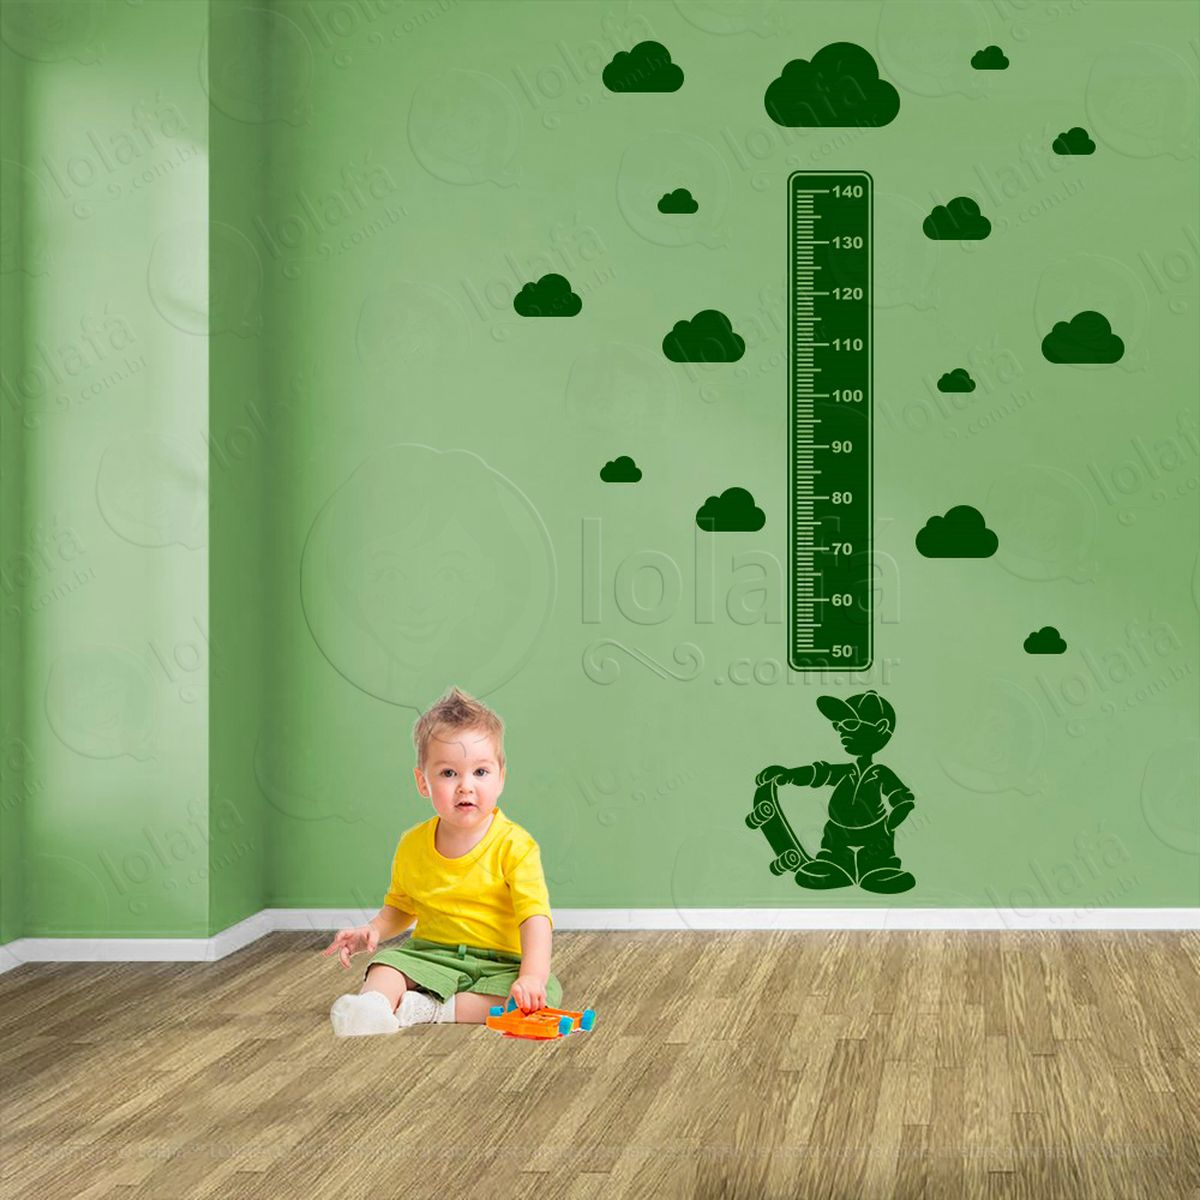 skate e nuvens adesivo régua de crescimento infantil, medidor de altura para quarto, porta e parede - mod:377